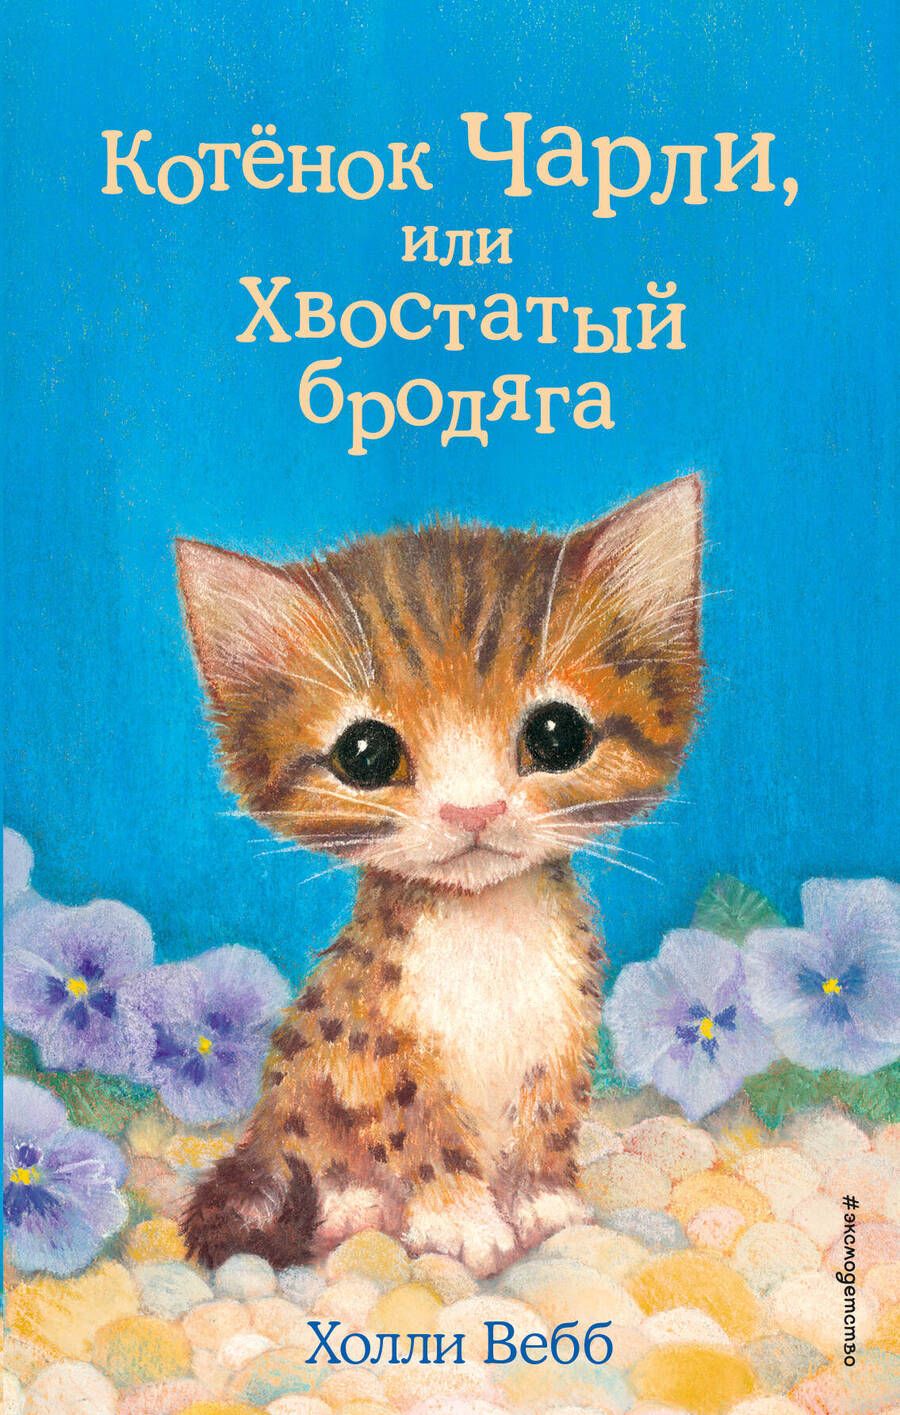 Обложка книги "Холли Вебб: Котенок Чарли, или Хвостатый бродяга"